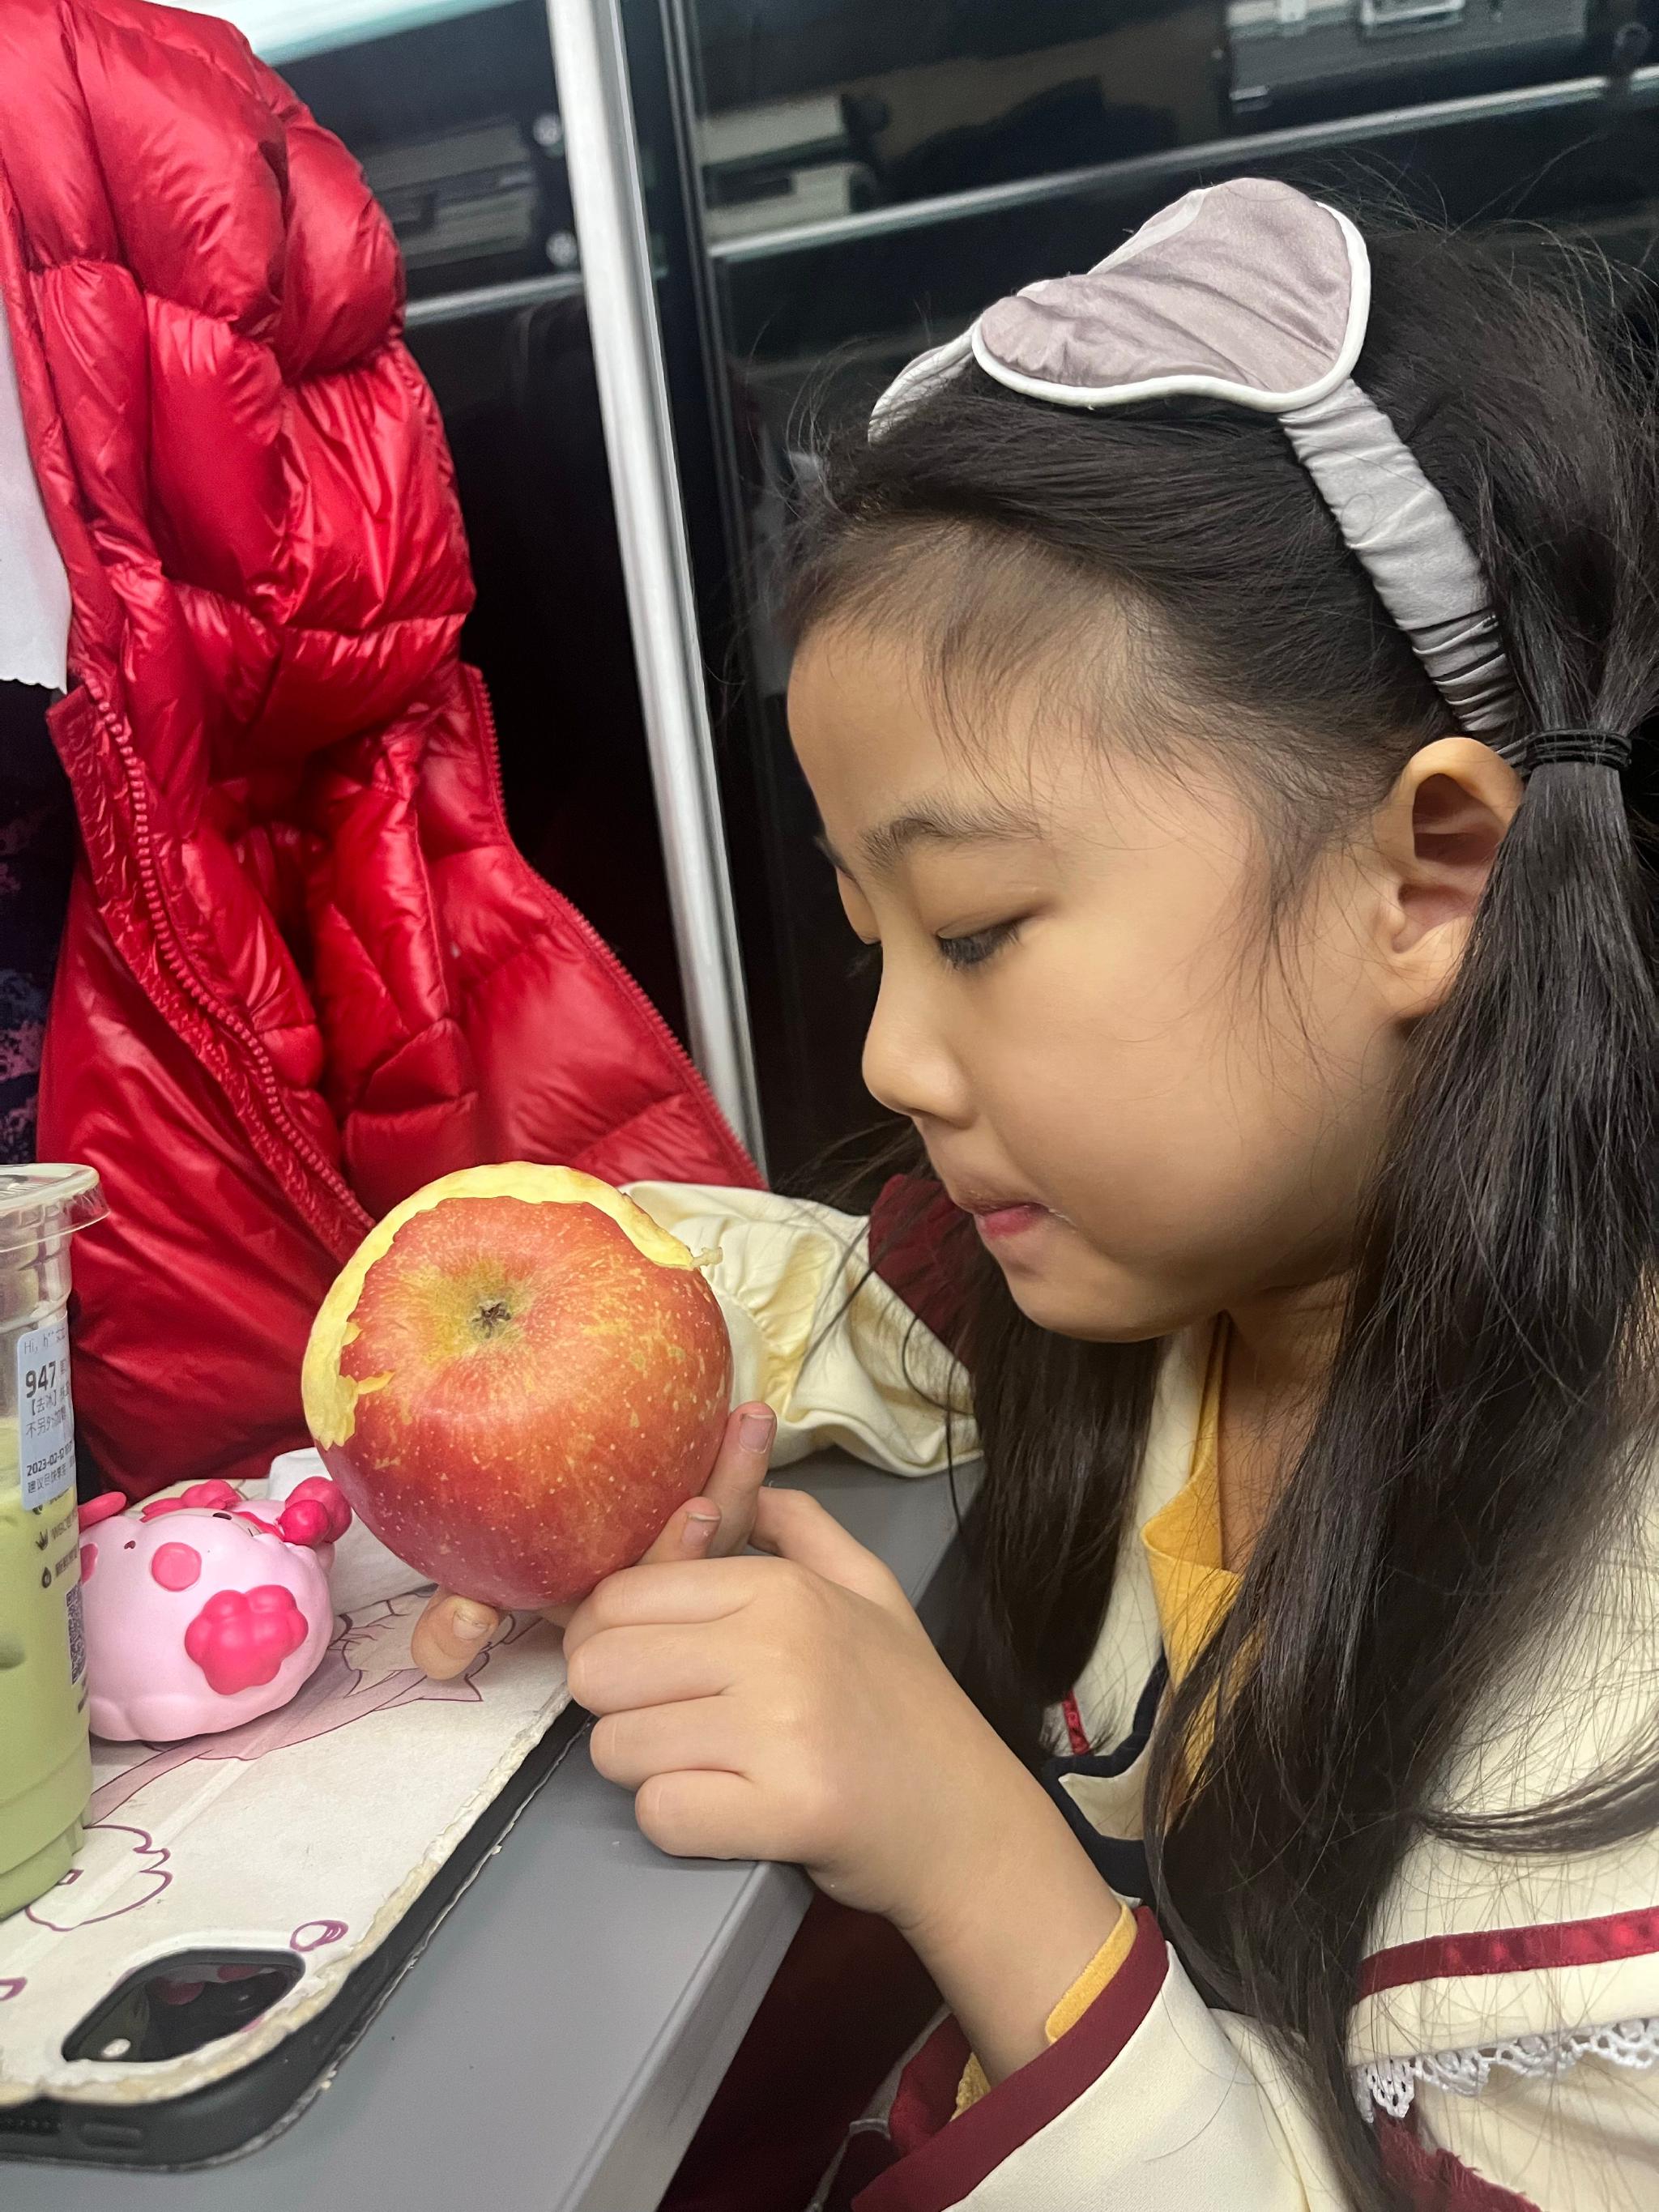 很多孩子喜欢吃苹果的新闻我很喜欢苹果的味道味道的意思